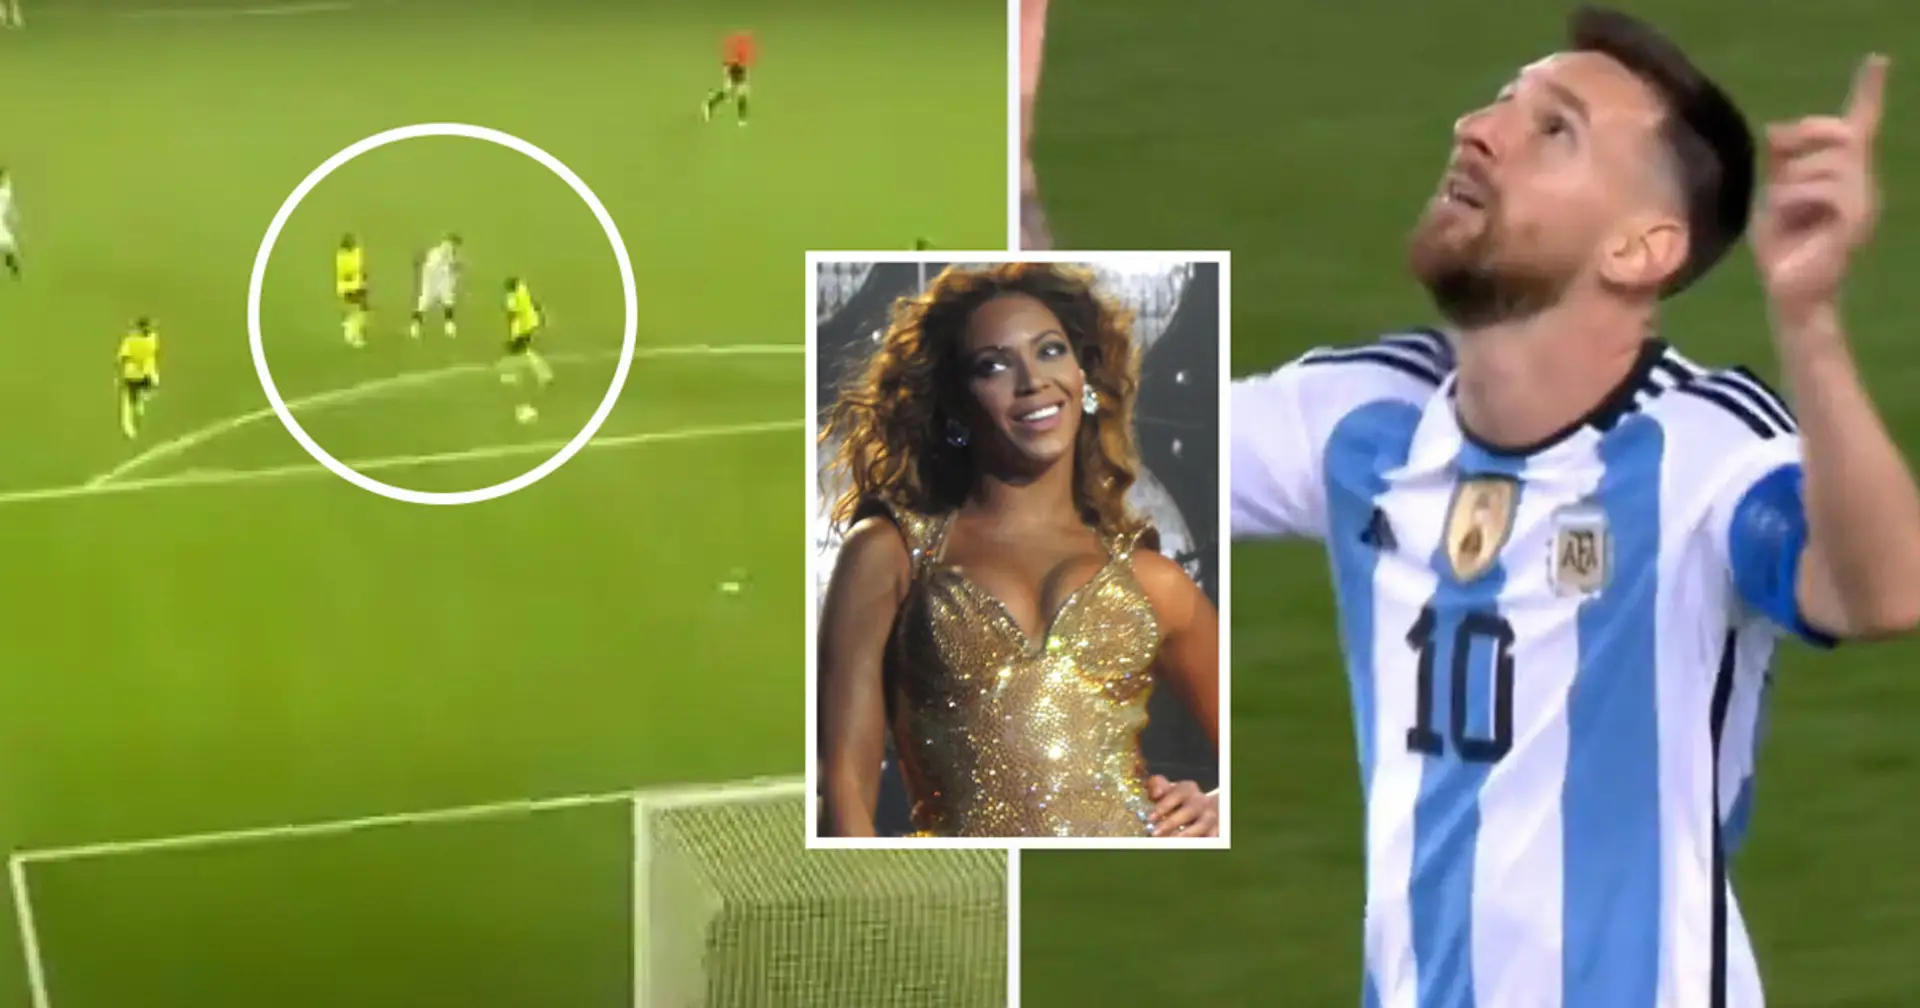 "Cooler als Beyonce": Fans loben das Tor von Leo Messi nach einem Assist per Hacke 